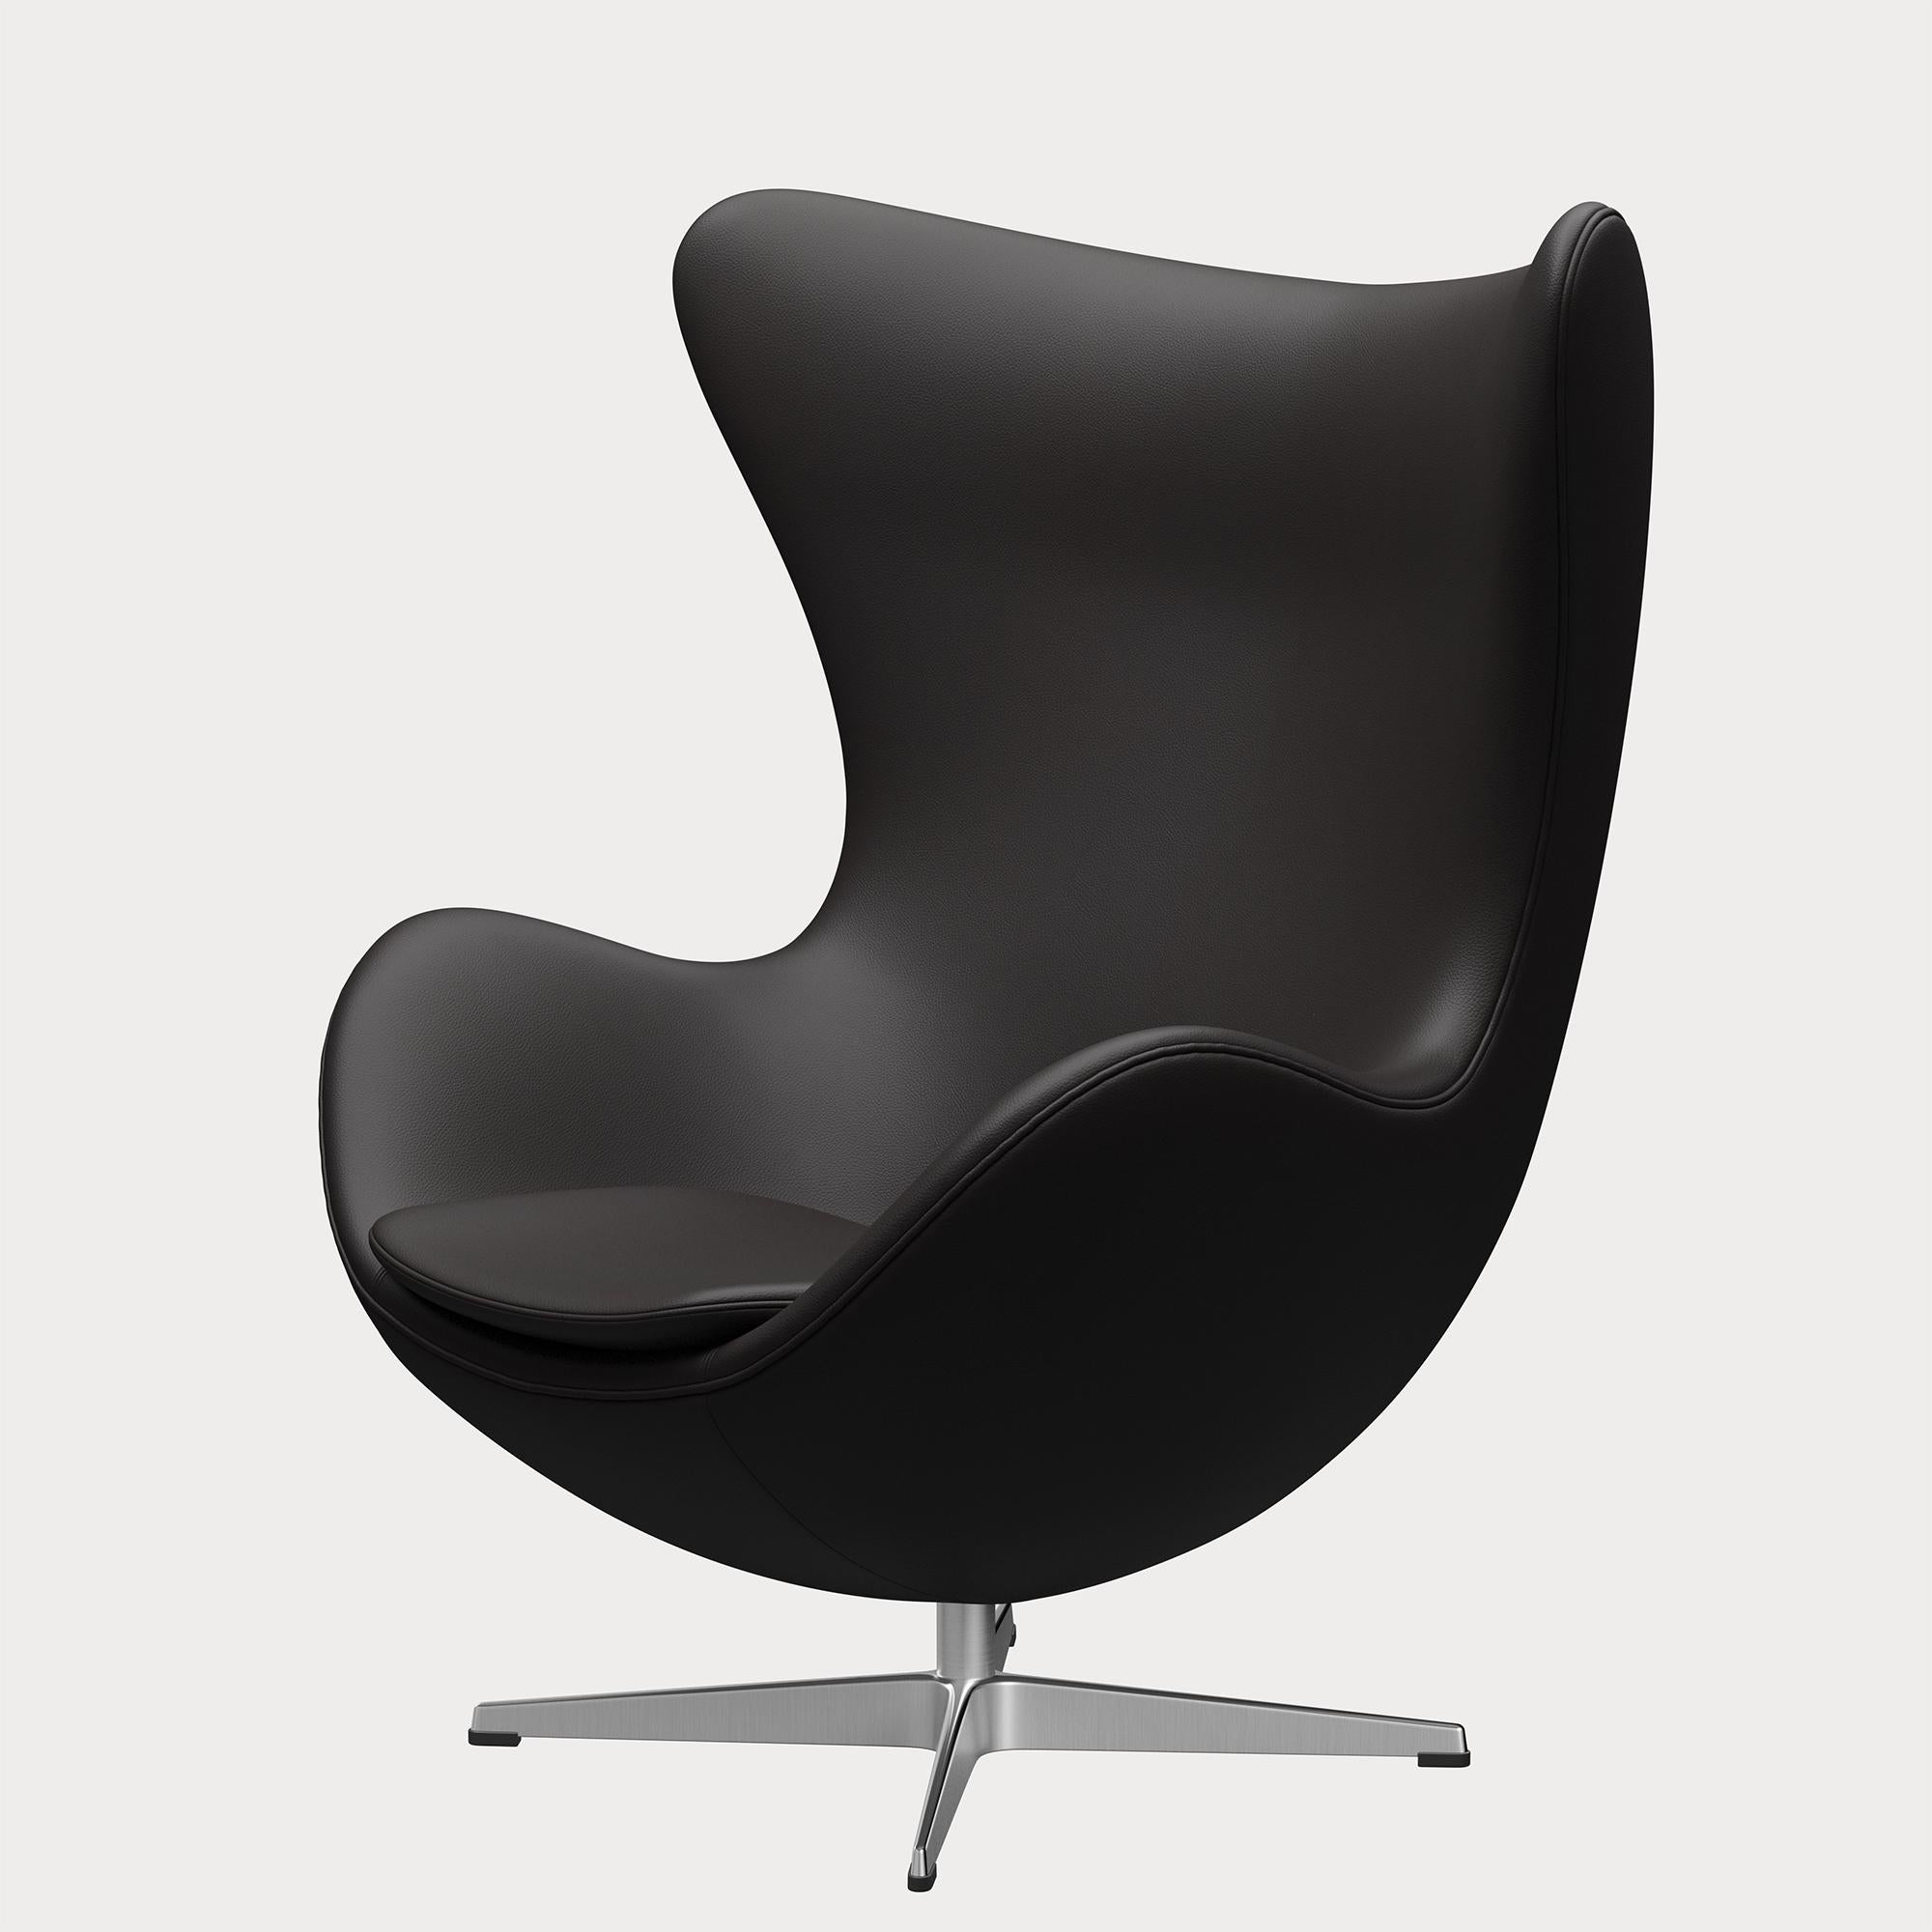 Metal Arne Jacobsen 'Egg' Chair for Fritz Hansen in Leather Upholstery (Cat. 4) For Sale